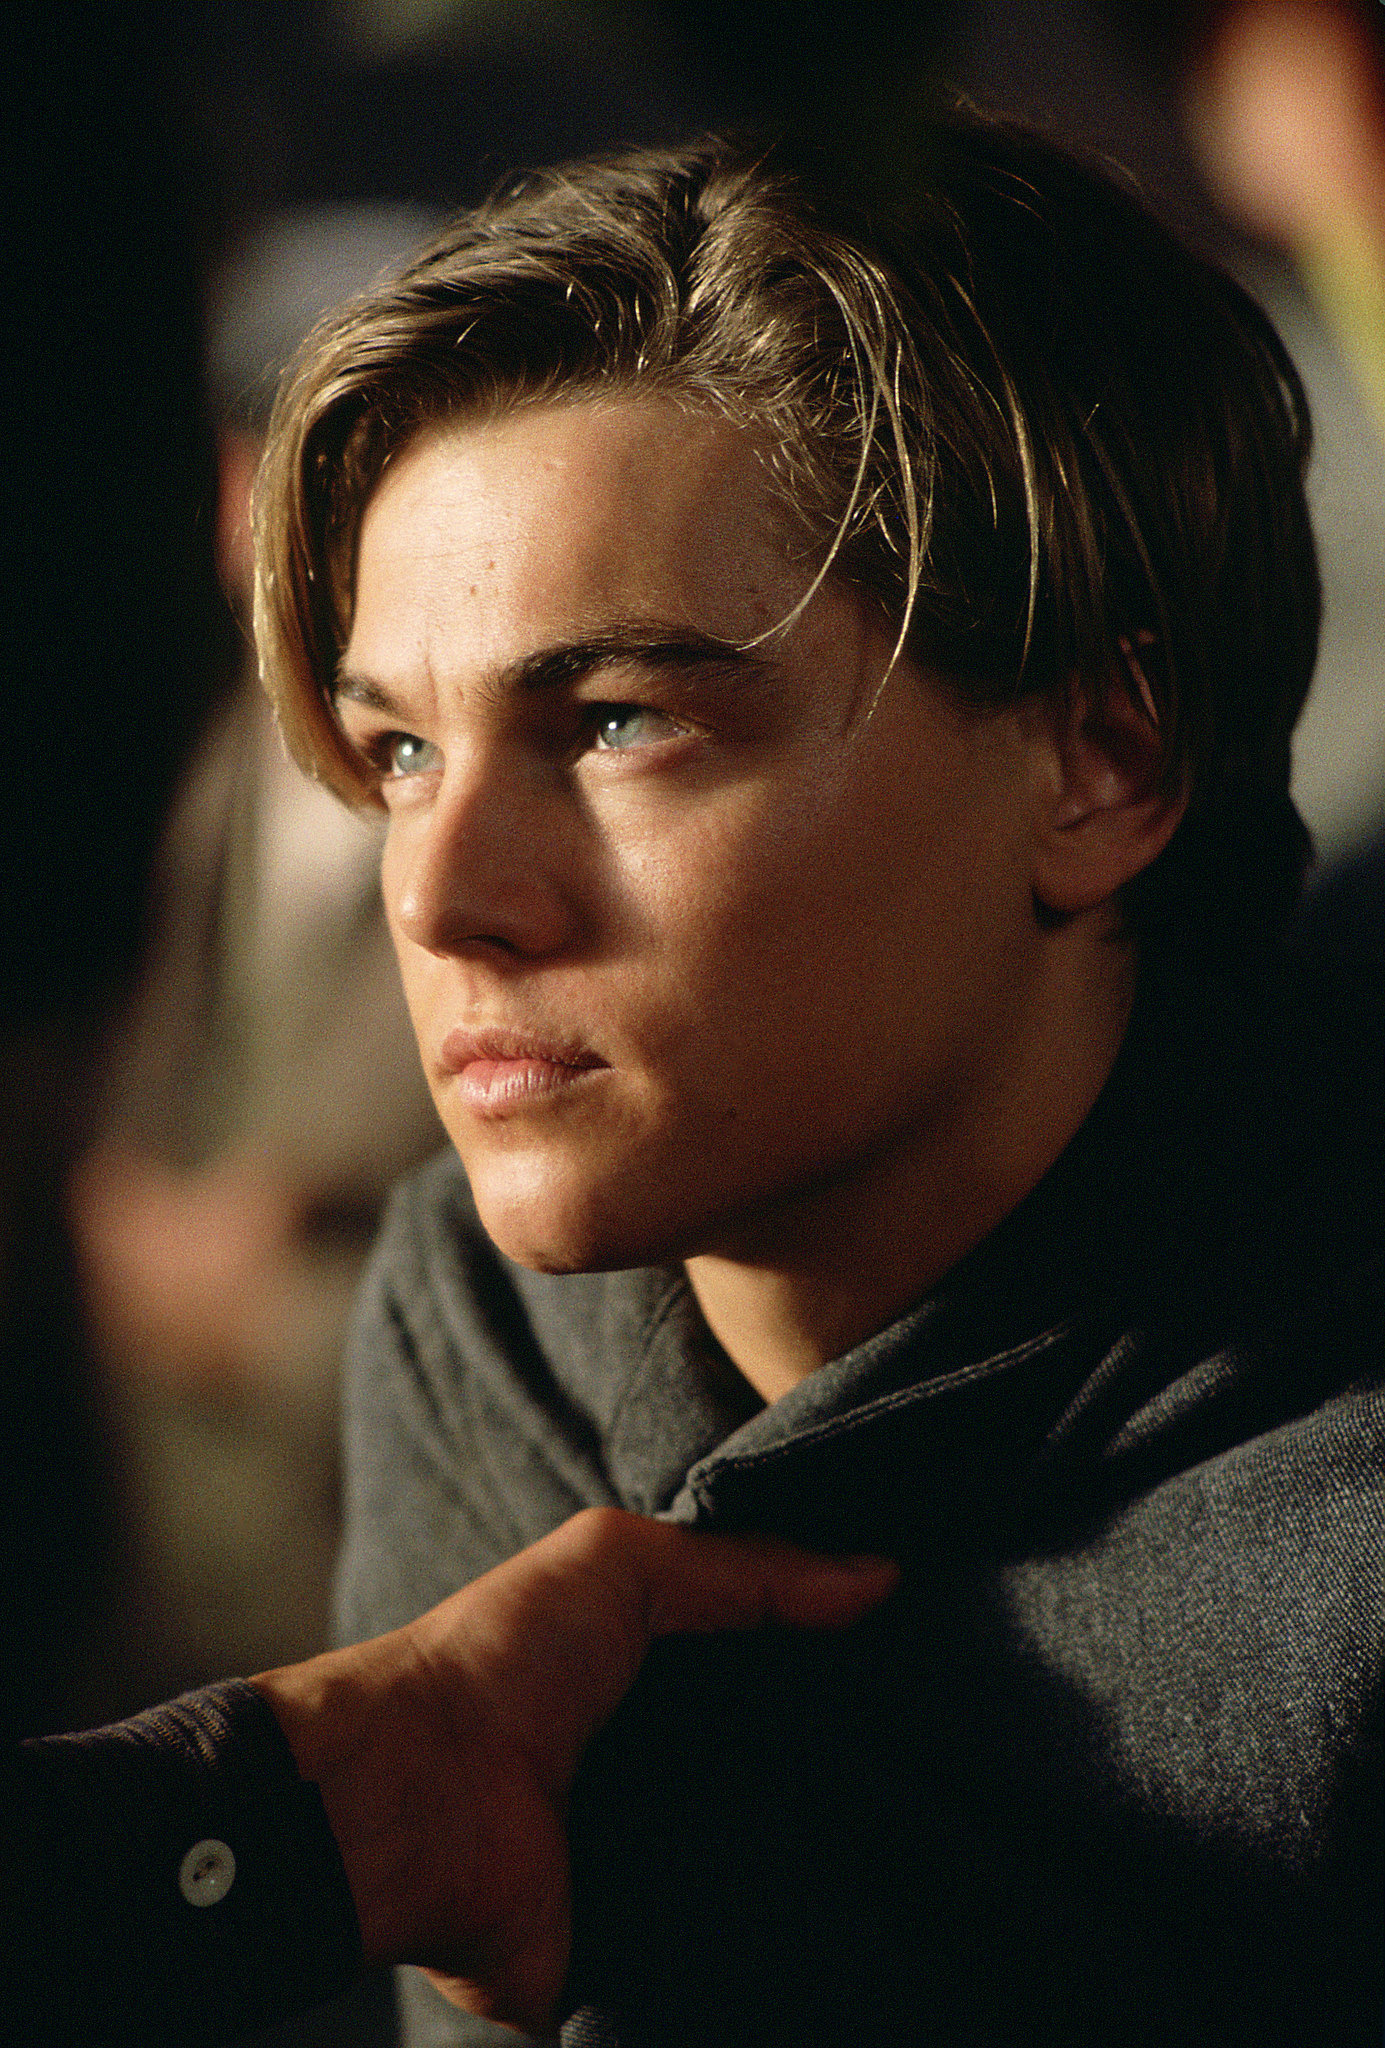 Leonardo DiCaprio in Titanic. | Swoon Over These Original Titanic Pictures | POPSUGAR ...1385 x 2048